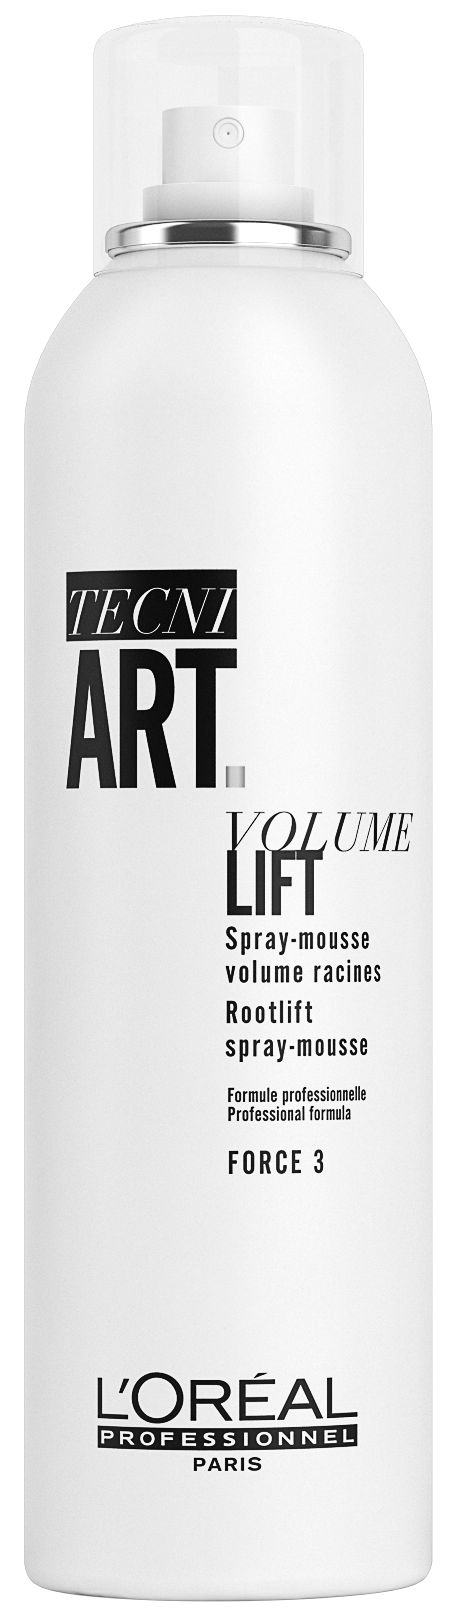 Volume lift 15- Tecni.art - 250ml